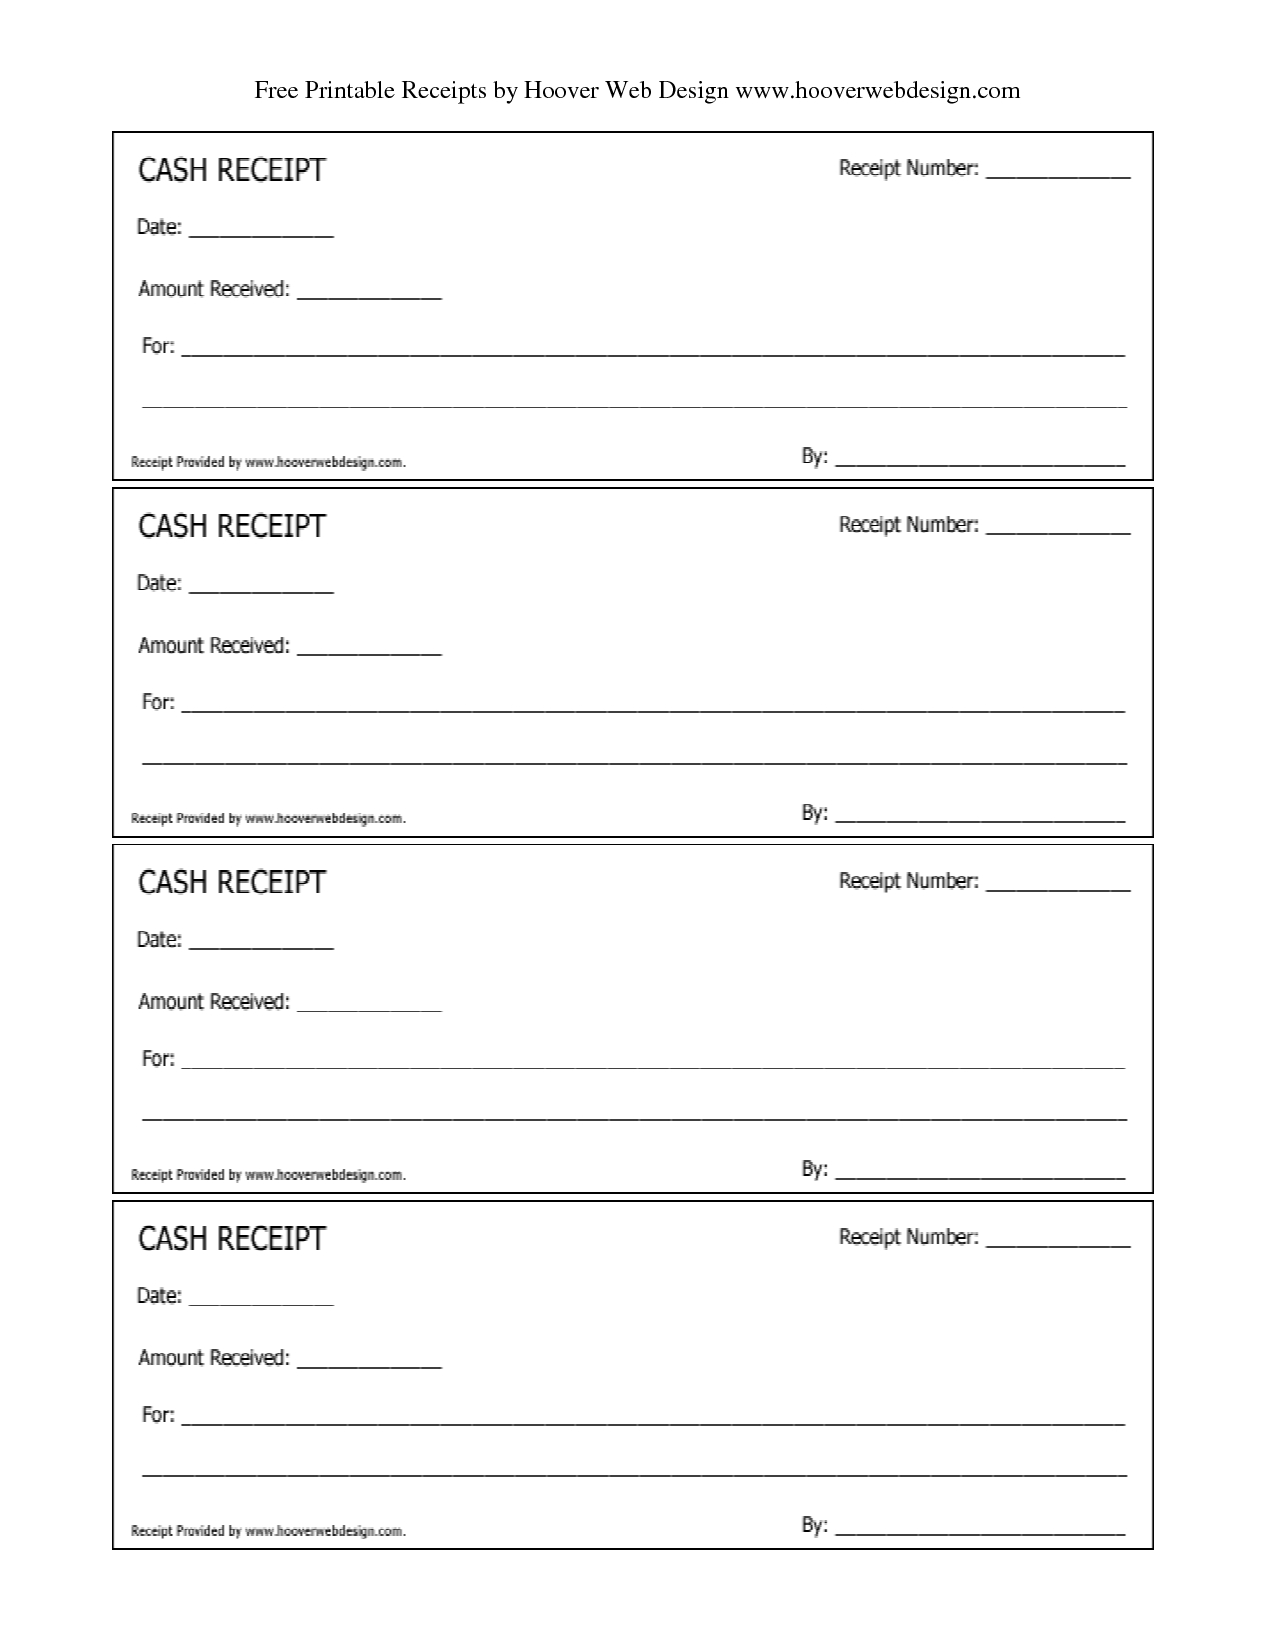 Free Printable Receipt Templates | Free Printable Cash Receipts - Free Printable Sales Receipt Form